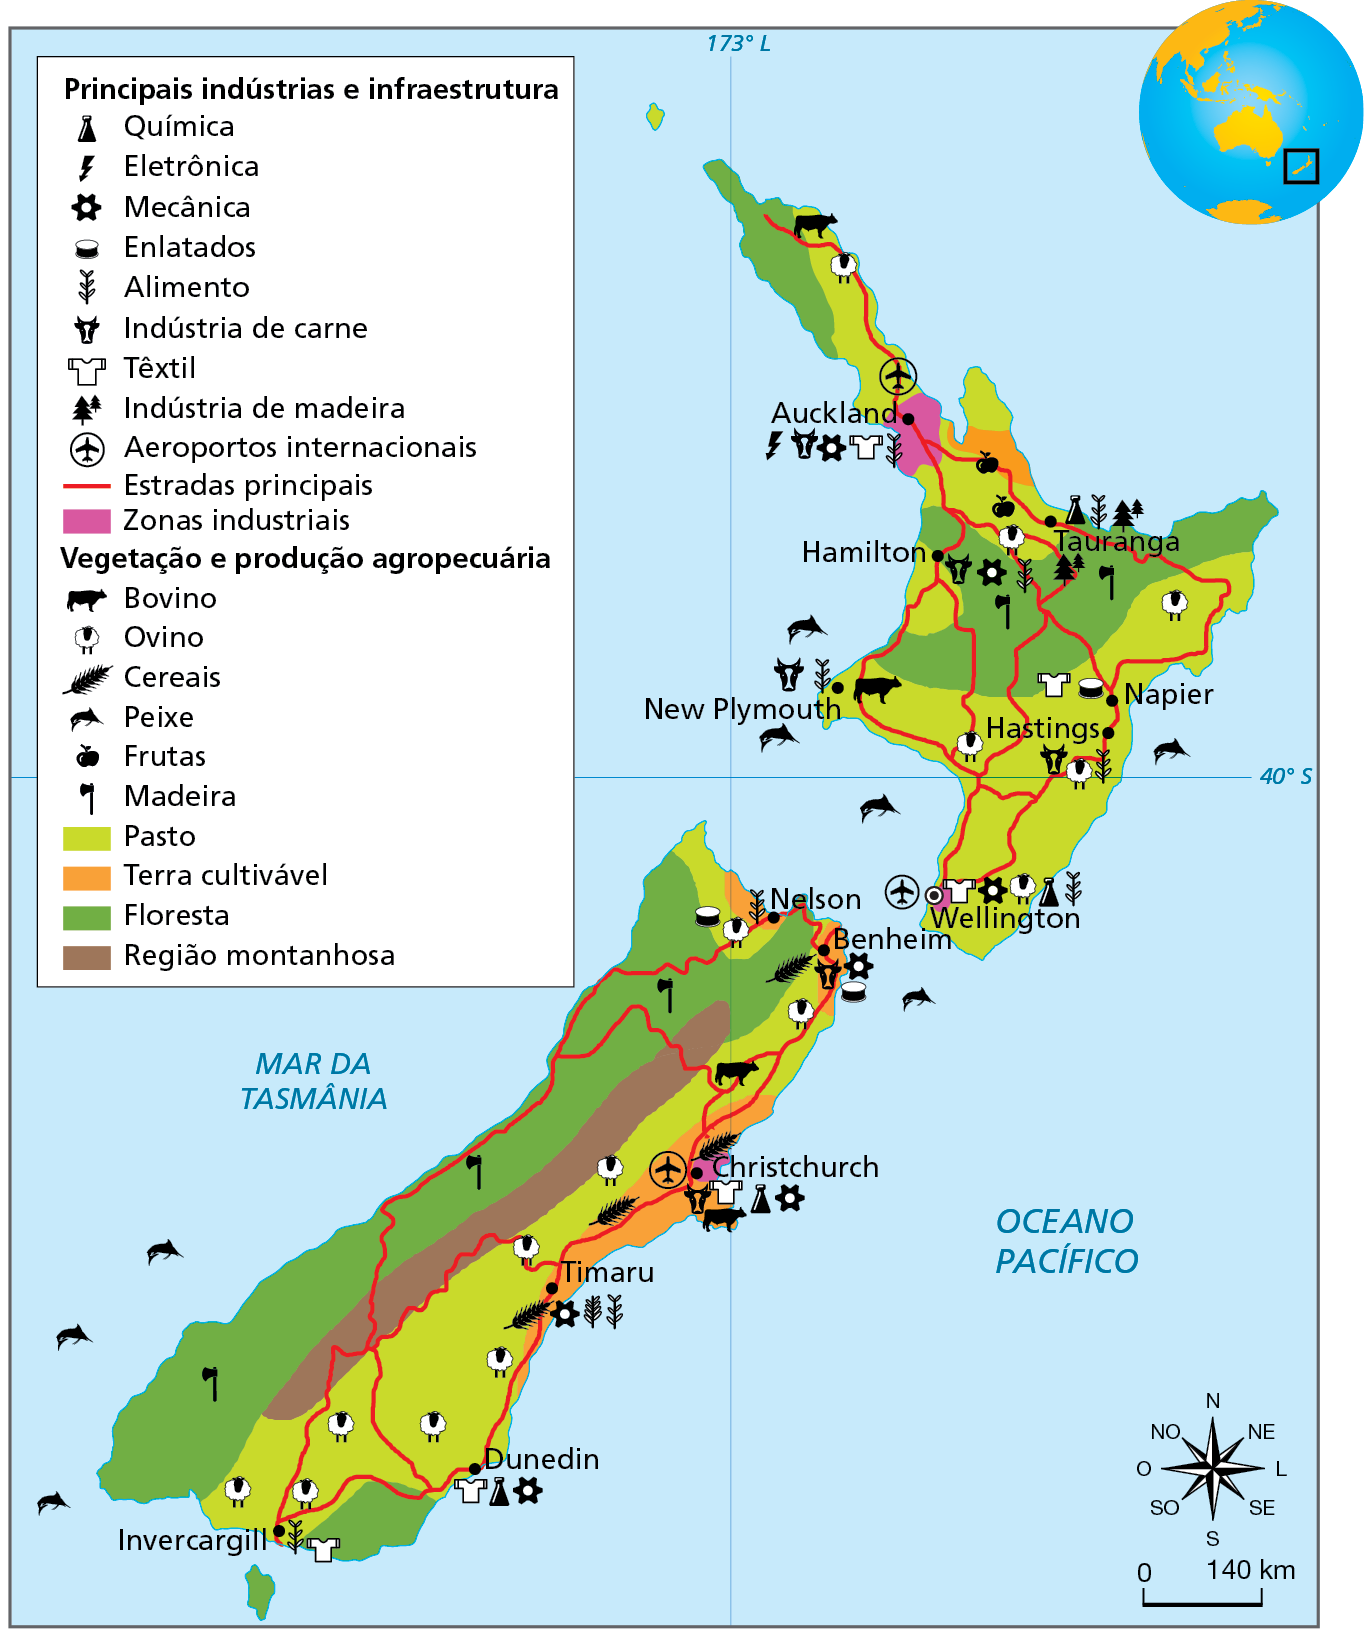 Mapa. Nova Zelândia: economia, infraestrutura e uso da terra - 2019. Mapa do território da Nova Zelândia destacando as principais indústrias e infraestrutura e as áreas de vegetação e produção agropecuária. Para isso foram empregados símbolos e cores para destacar as diferentes coberturas do solo e as atividades econômicas. 
Zonas industriais (mancha na cor rosa): áreas que englobam as cidades e o entorno de Auckland e Wellington, respectivamente ao norte e ao sul da Ilha do Norte, e de Christchurch, na costa centro-leste da Ilha do Sul. Nessas zonas se destacam diversos ramos industriais e, também, de produção agropecuária: química, eletrônica, mecânica, têxtil, indústria de carne, produção de cereais, criação de bovinos e ovinos. 
Áreas de pasto: porções na parte norte e em todo o centro-sul da Ilha do Norte. Extensa faixa de terras cobrindo a maior parte da borda oriental da Ilha do Sul. Nessas áreas destacam-se a criação de bovinos e ovinos, as indústrias de carnes e enlatados e a indústria têxtil.
Áreas de terras cultiváveis: porção voltada para a costa leste da Ilha do Sul, nos arredores de Timaru e Christchurch; costa norte da Ilha do Sul, nos arredores das cidades de Nelson e Benheim; faixa ao norte da Ilha do Norte, a leste da zona industrial de Auckland. Nessas áreas destacam-se a produção de cereais e frutas. 
 Áreas de Floresta: faixa no extremo noroeste e na parte central da Ilha do Norte; extensa faixa de terras cobrindo a porção ocidental da Ilha do Sul. Nessas áreas destacam-se a extração madeireira e a indústria de madeira. 
Região montanhosa: porção central da Ilha do Sul 
Aeroportos internacionais: Christchurch, Auckland, Wellington.  
Estradas principais: por todo território de norte a sul, leste e oeste.  
Na parte de baixo, à direita, rosa dos ventos e escala de 0 a 140 quilômetros.